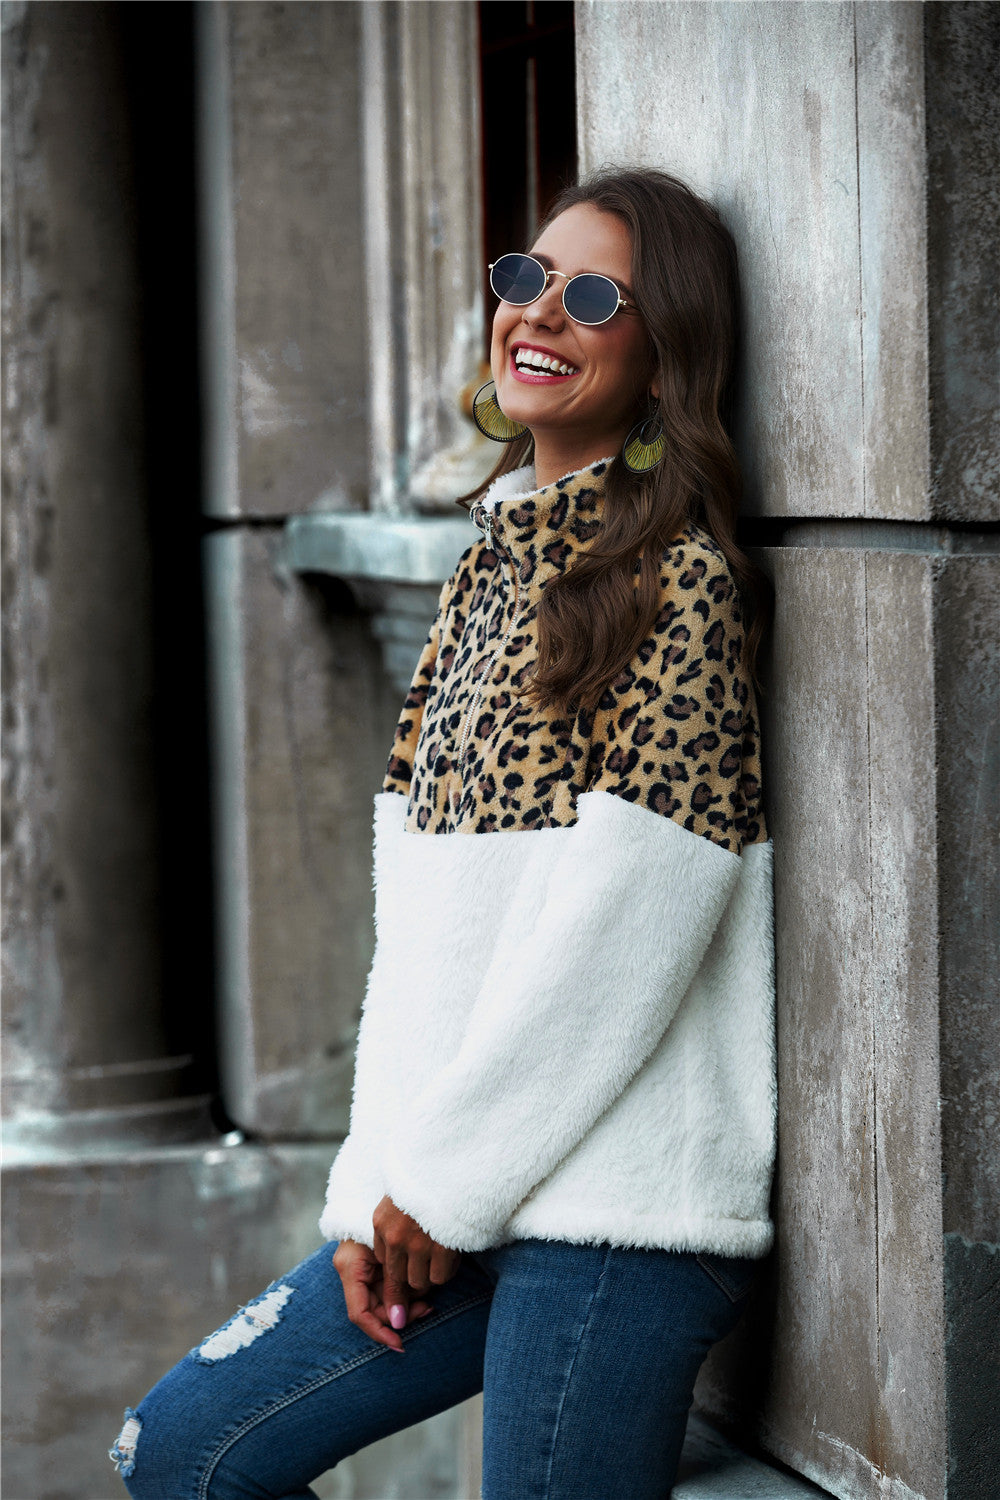 Leopard Teddy Sweatshirt - ONLINE EXCLUSIVE